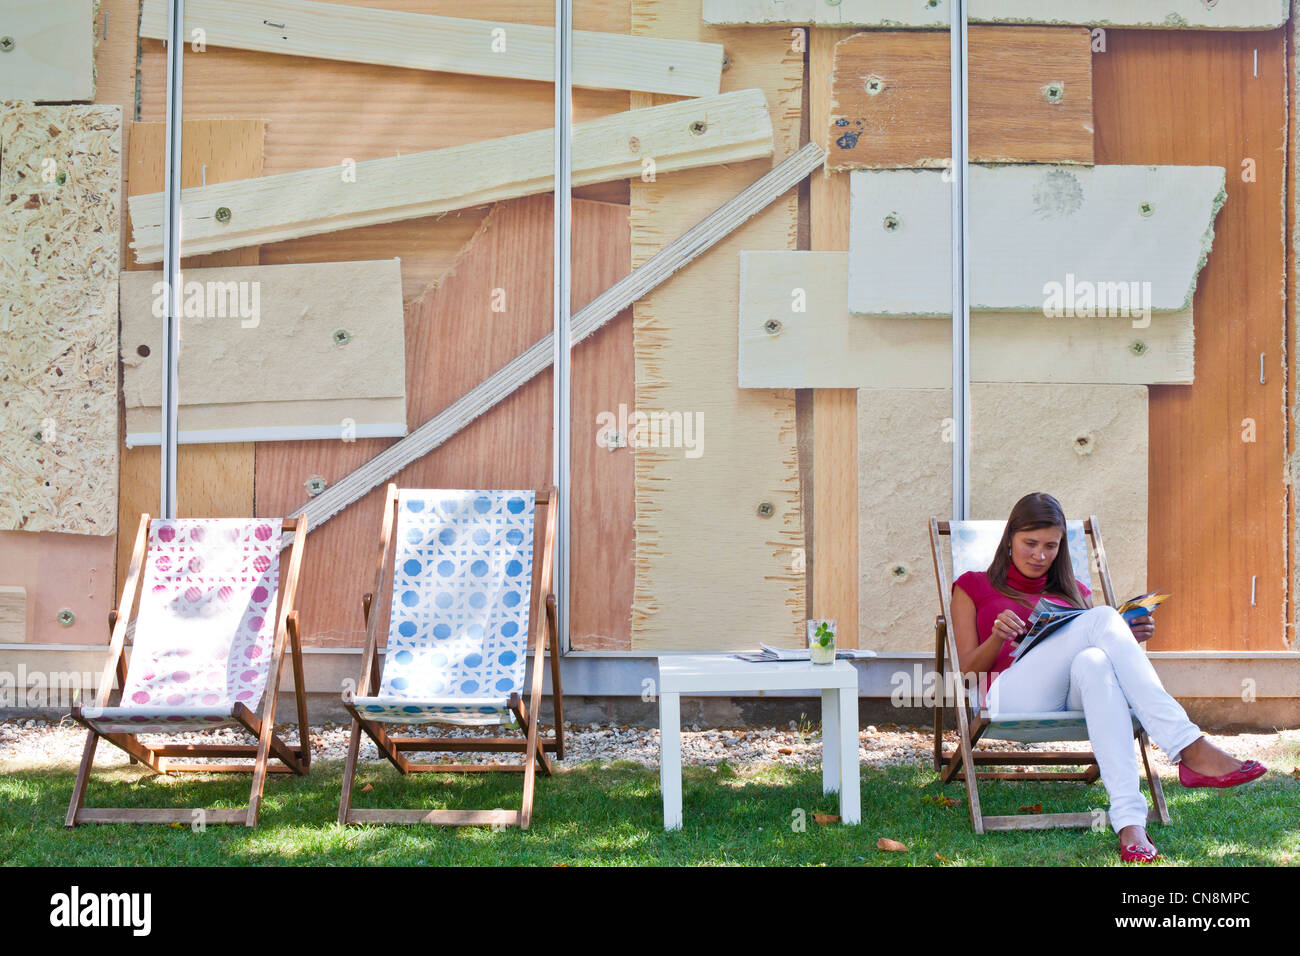 Austria, Vienna, Karlsplatz, Kunsthallen Café, deck chairs in front of the Kunsthalle Wien project space Stock Photo